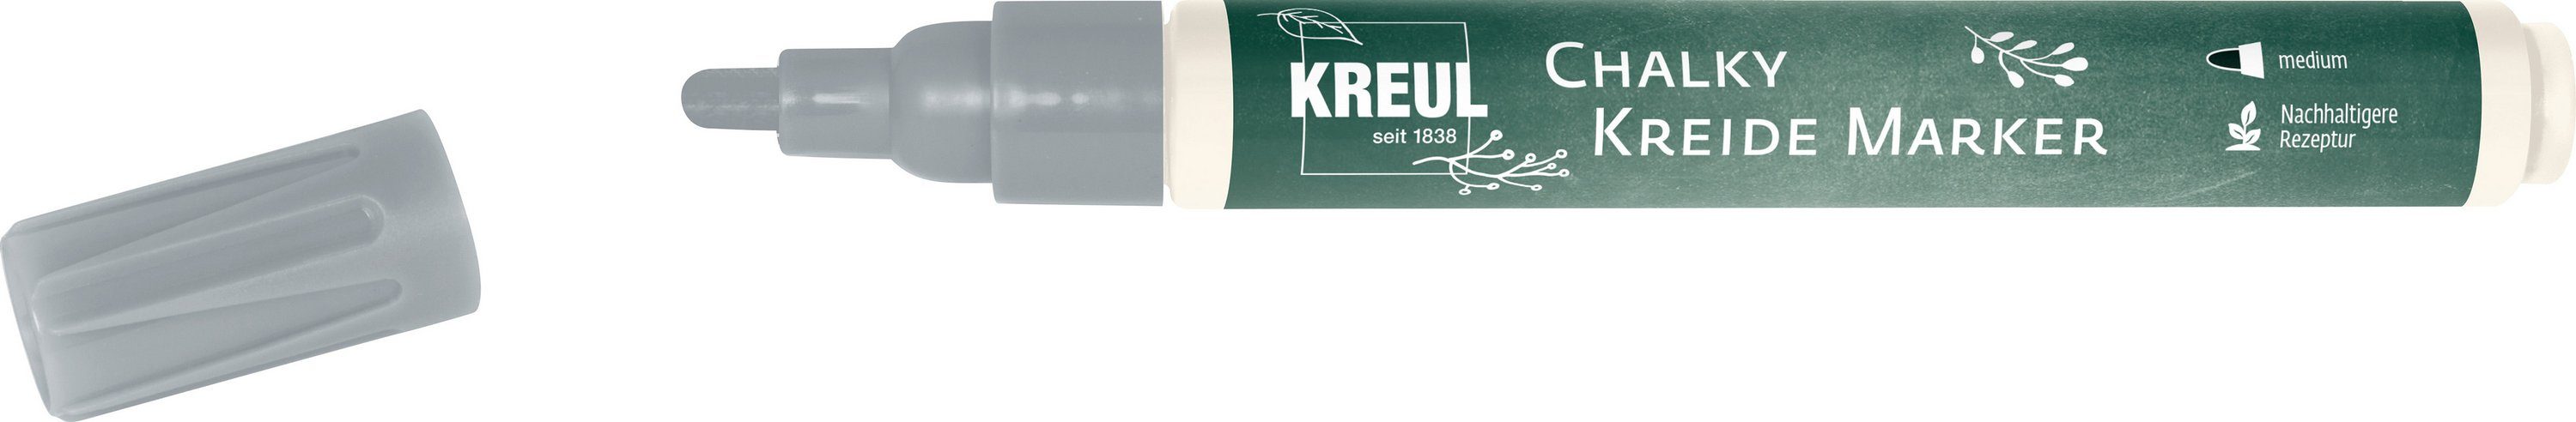 Kreul Kreidemarker Chalky, 2-3mm Strichstärke Silver Show